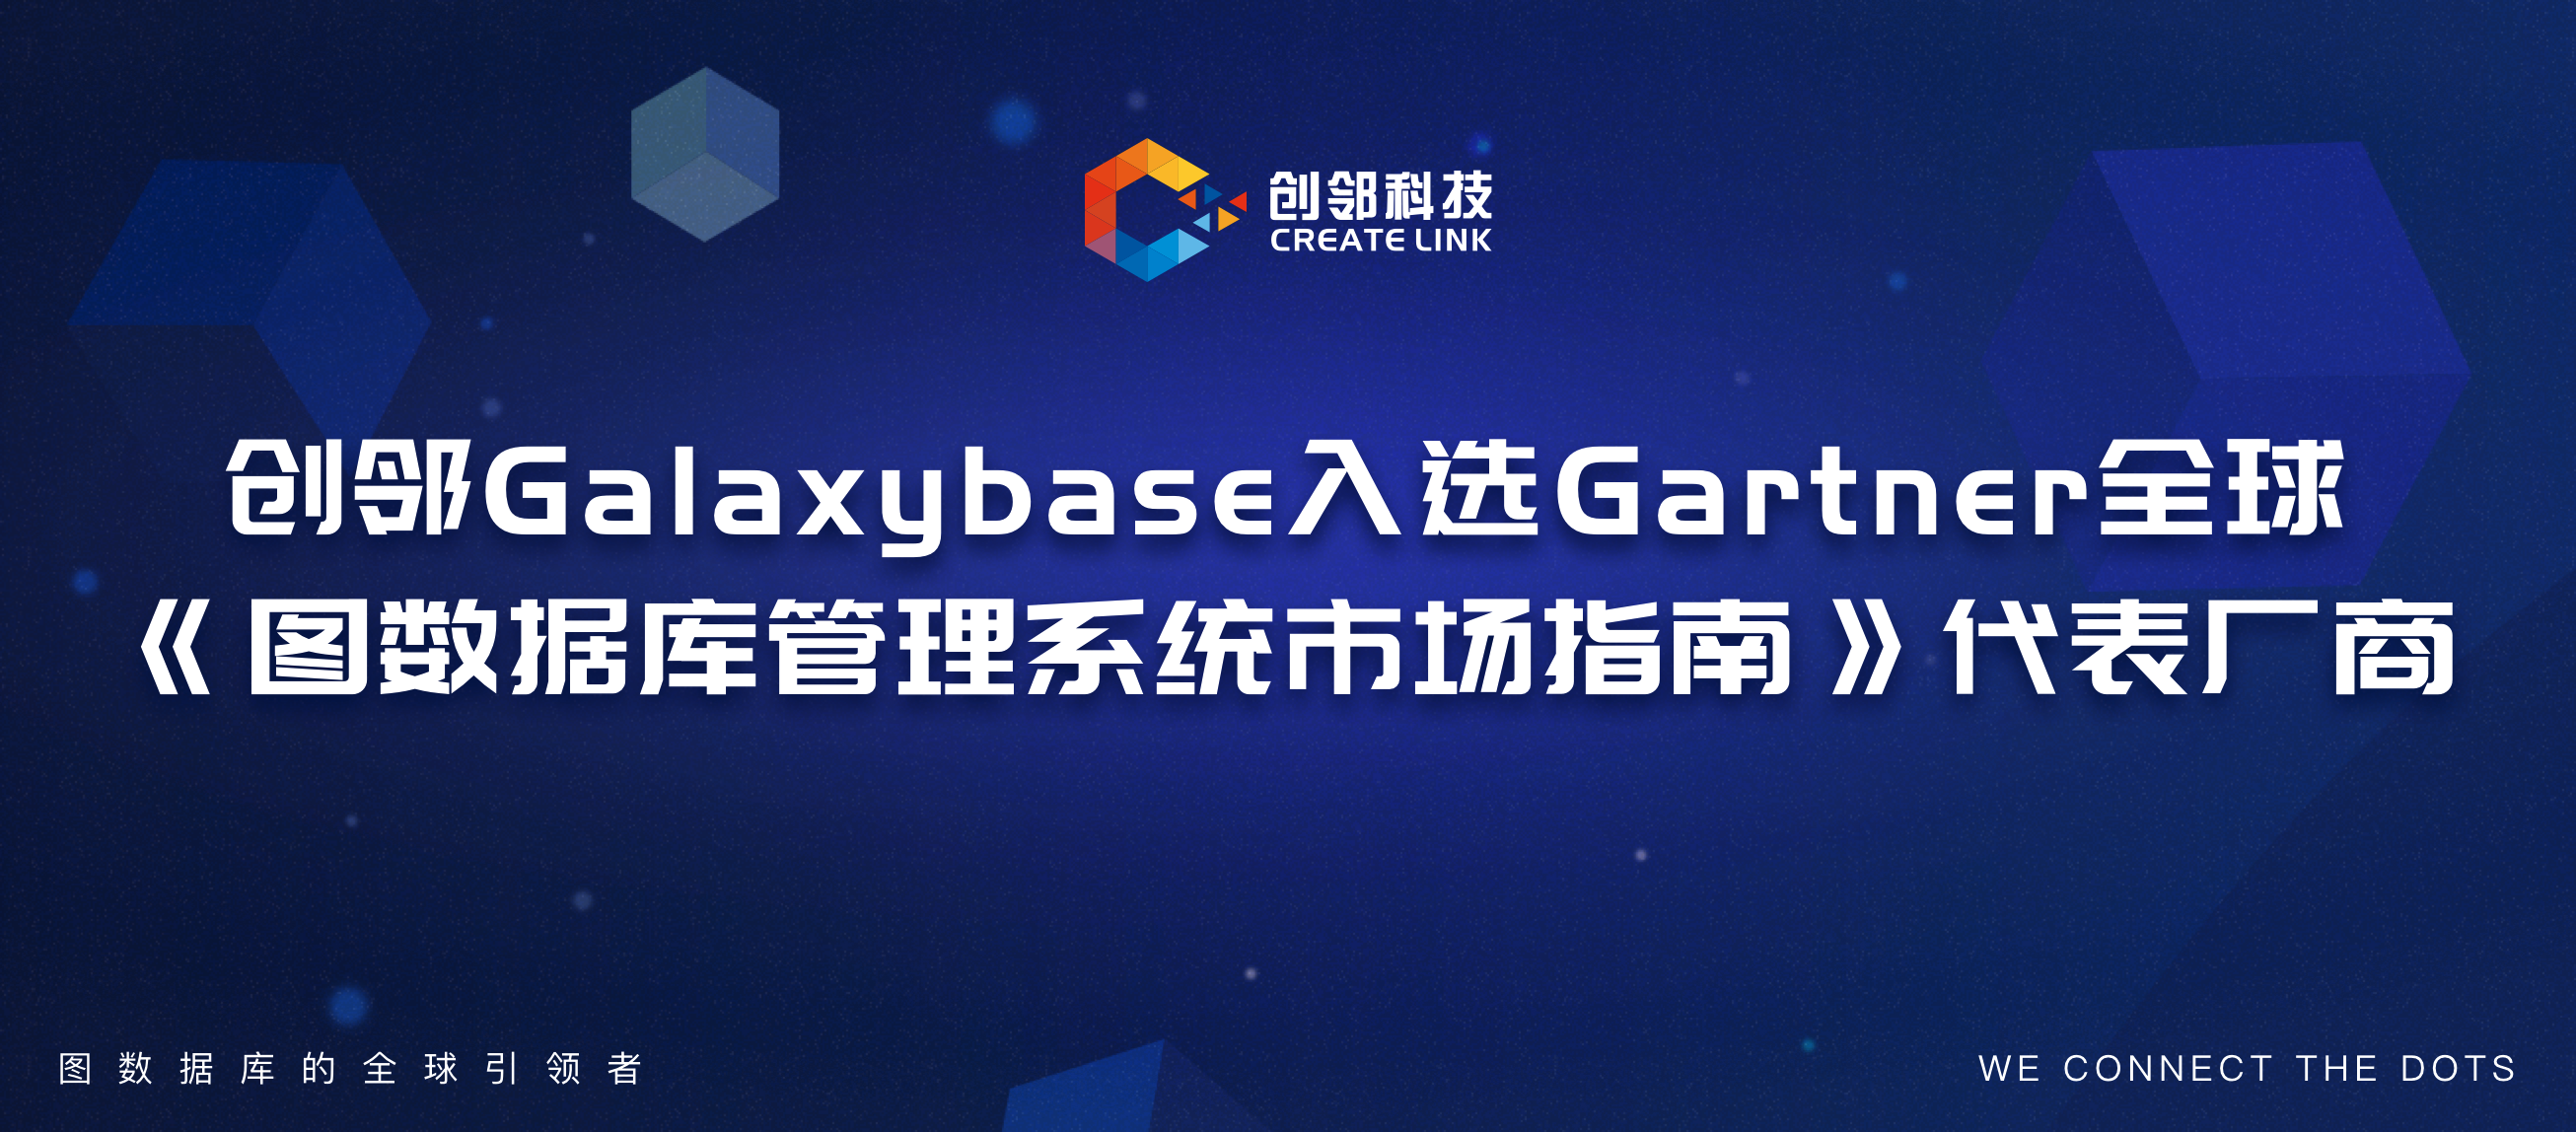 创邻科技Galaxybase入选Gartner全球《图数据库管理系统市场指南》代表厂商